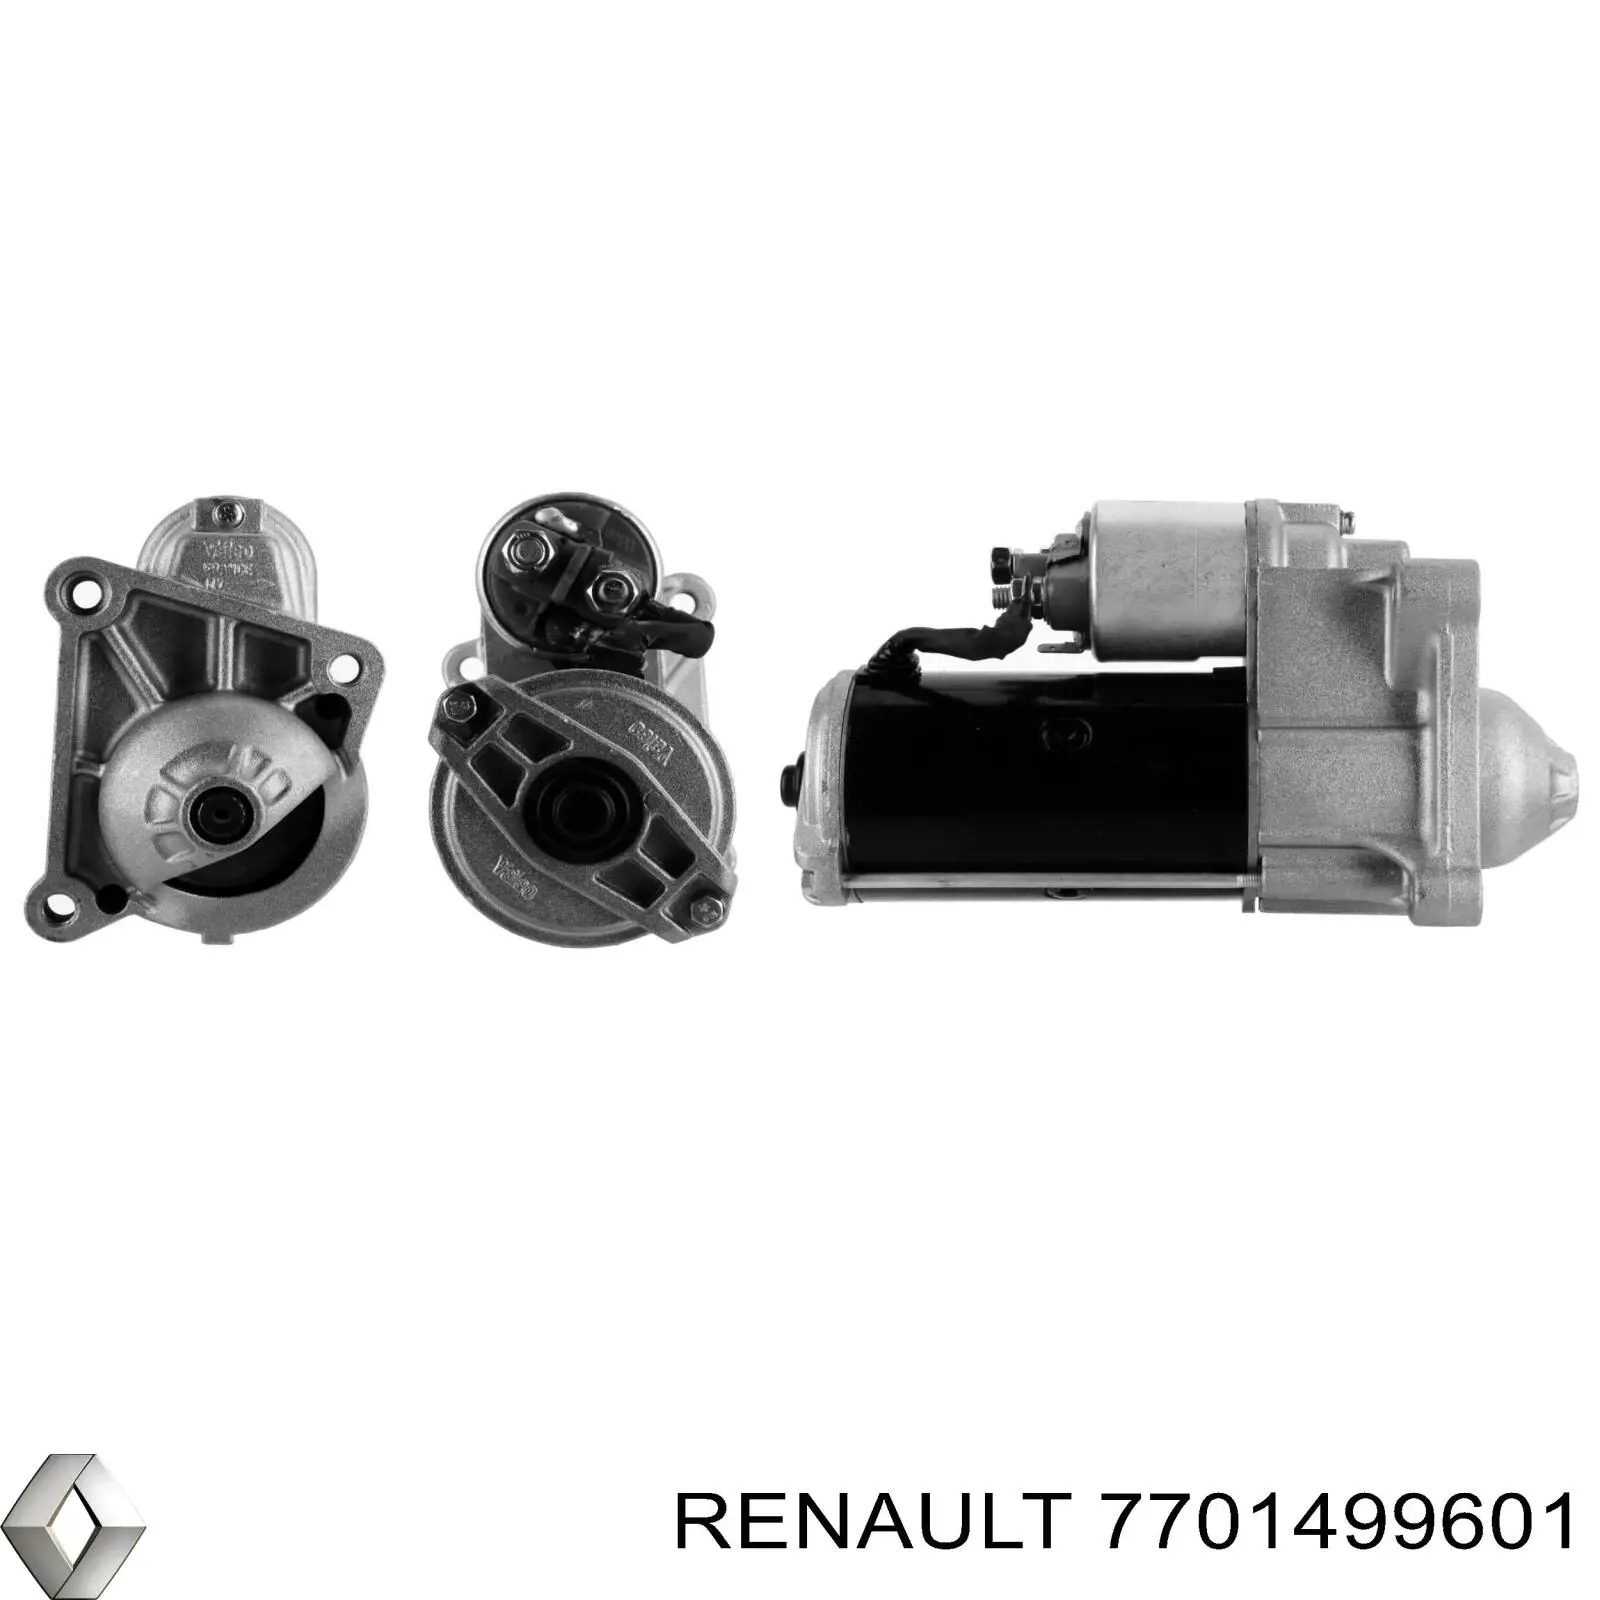 7701499601 Renault (RVI) motor de arranque